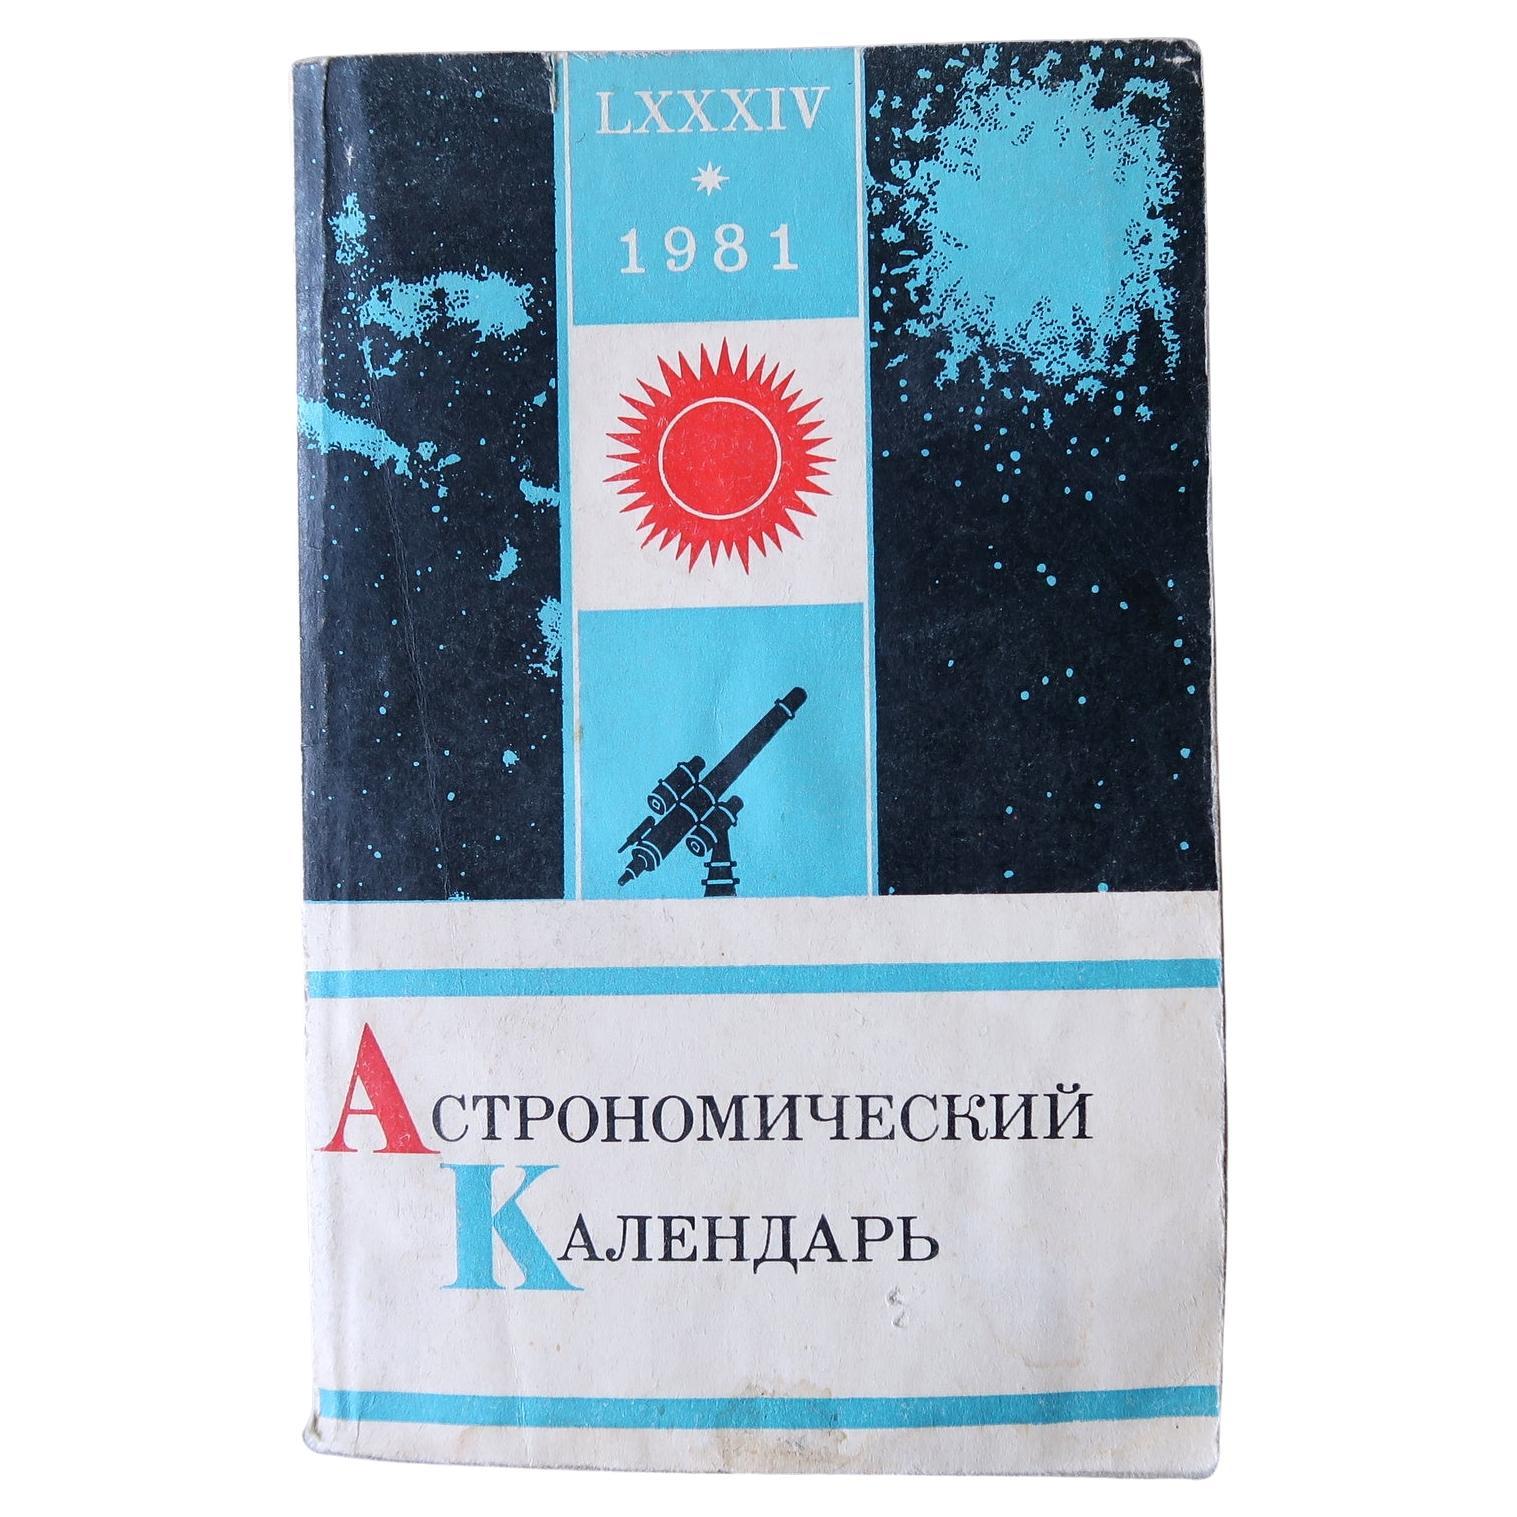 Almanac astronomique vintage : « Celestial Insights for 1981 », URSS, 1J137